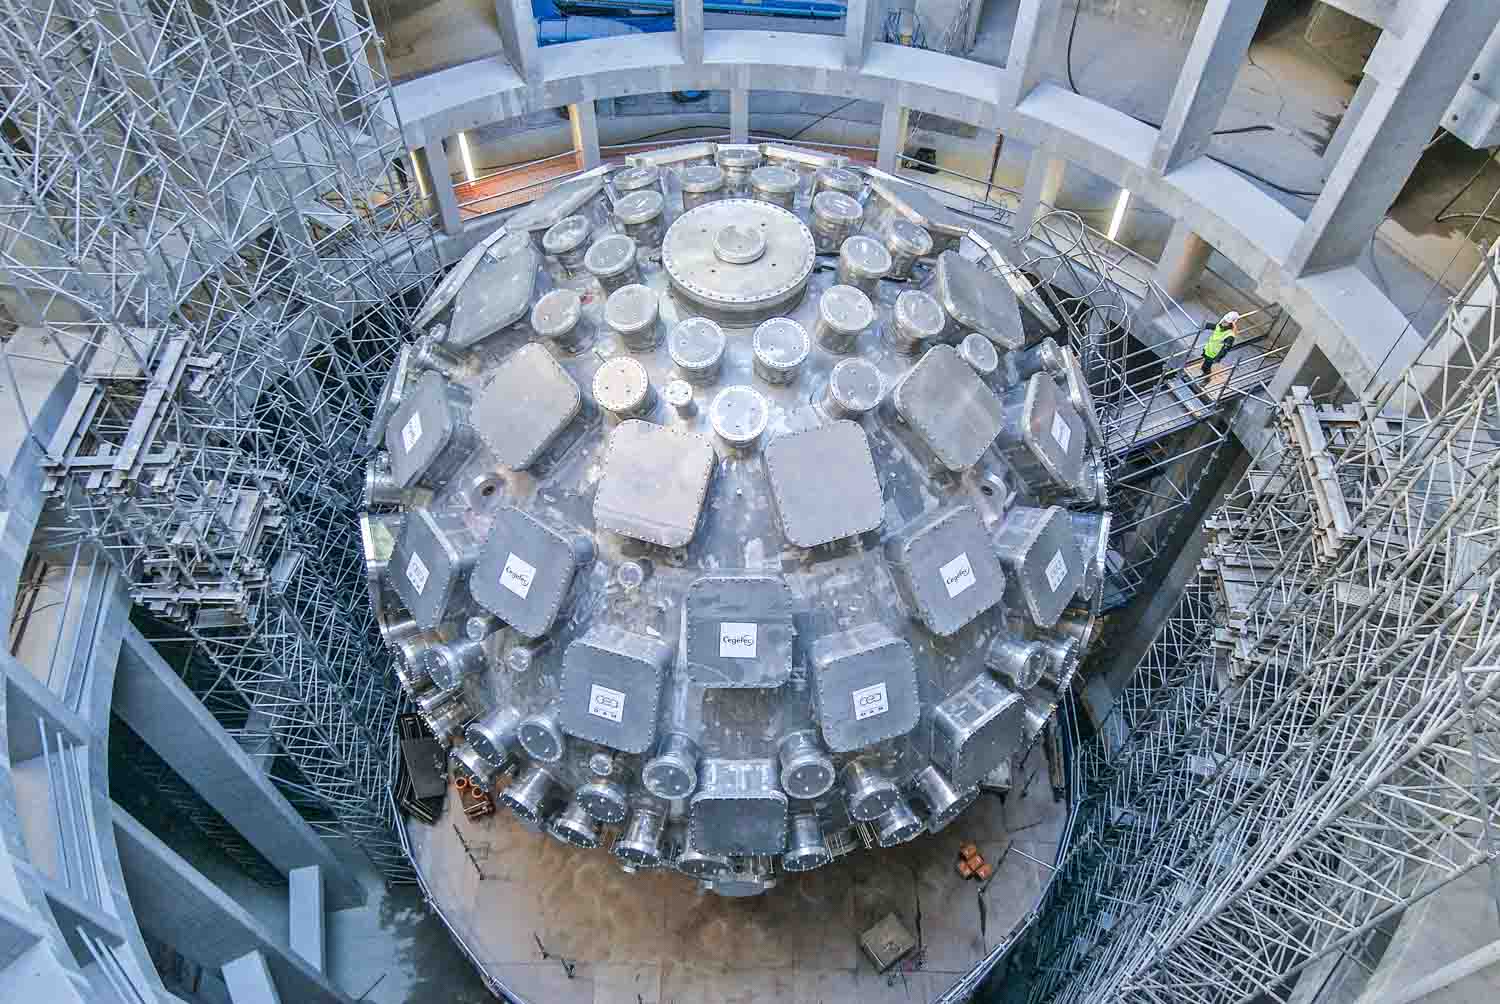 Un laboratoire pour la bombe H. Programme de simulation de l'arme nucléaire. Bordeaux. CEA. site du CESTA. La chambre d'expérience du Laser Mégajoule dans son enceinte de béton. c'est une sphère de 10m de diamêtre, de 10 cm d'épaisseur et de 140 tonnes. Vers elle, convergeront 240 faisceaux laser, qui serviront à déclencher des expériences de fusion nucléaire sur d'infimes quantités de deutérium et de tritium. Les hublots carrés sont destinés à faire entrer les faisceaux laser et les hublots ronds les appareils de diagnostics.Le Laser Mégajoule est un outil expérimental du programme de Simulation du CEA destiné à garantir la fiabilité et la sûreté des armes nucléaires, sans recourir aux essais auxquels la France a renoncé depuis 1996.